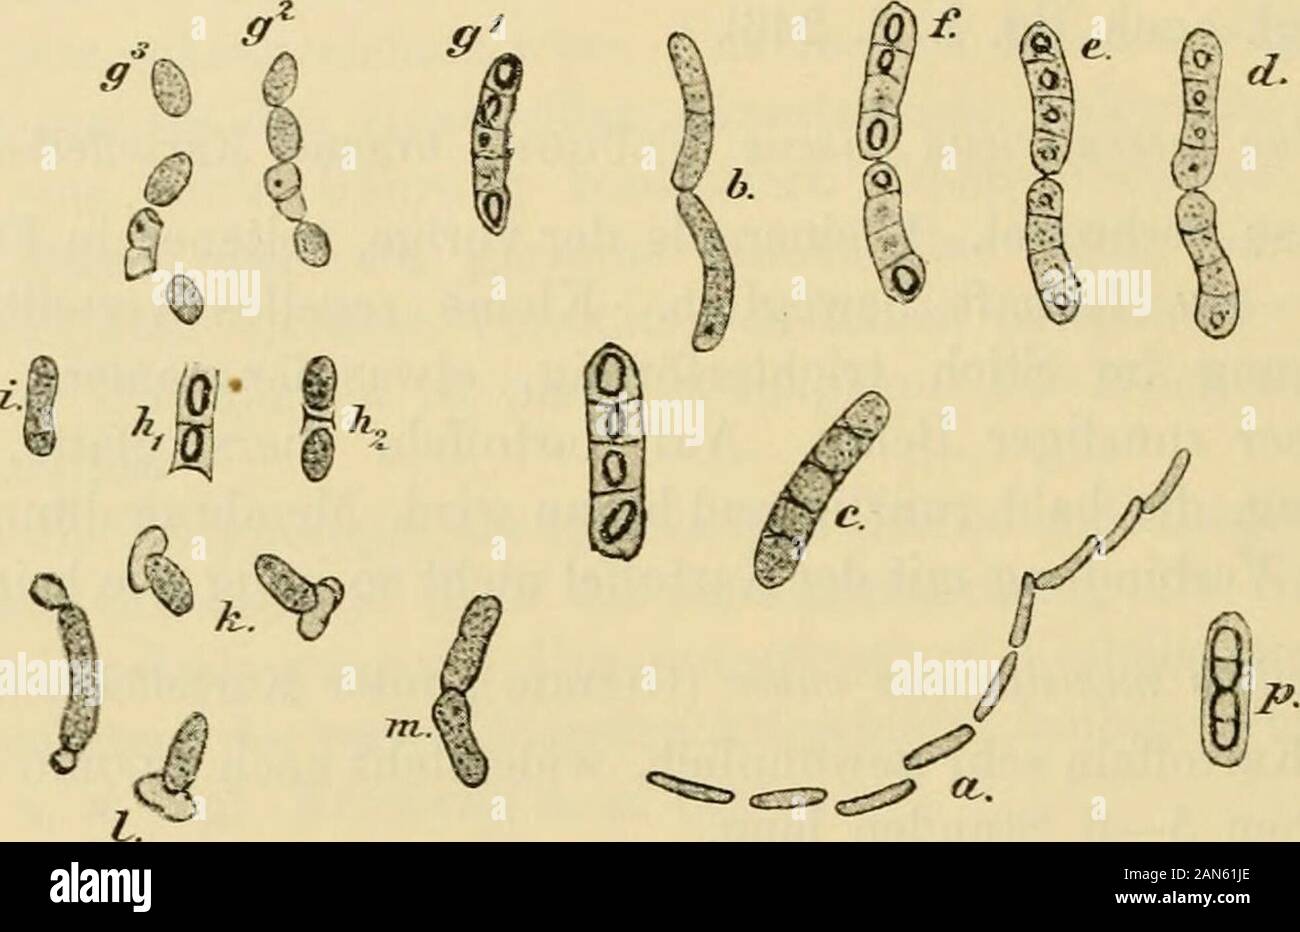 Die mikroorganismenMit besonderer berücksichtigung der ätiologie der infektionskrankheiten . Bacillus myeoicles (Flügge), Wurzel- oder Erdbacillus.Identisch mit Bac. ramosus (Eisexberg, L.).Im Wasser und namentlich im Erdboden sehr verbreitet.Bacillen etwas grösser und plumper wie die Heubacillen, mühsam 200 Systematik der Bakterien. beweglich, häufig in langen Scheinfäden. Sporen gross, niittelständig,ellipsoidisch, leicht durch Doppelfärbung darzustellen. Wachstum rechtcharakteristisch. Aerobier. In Gelatineplatten Kolonien, die durch ihreausgedehnte Verästelung an Schimmelpilze erinnern. Ba Stock Photo